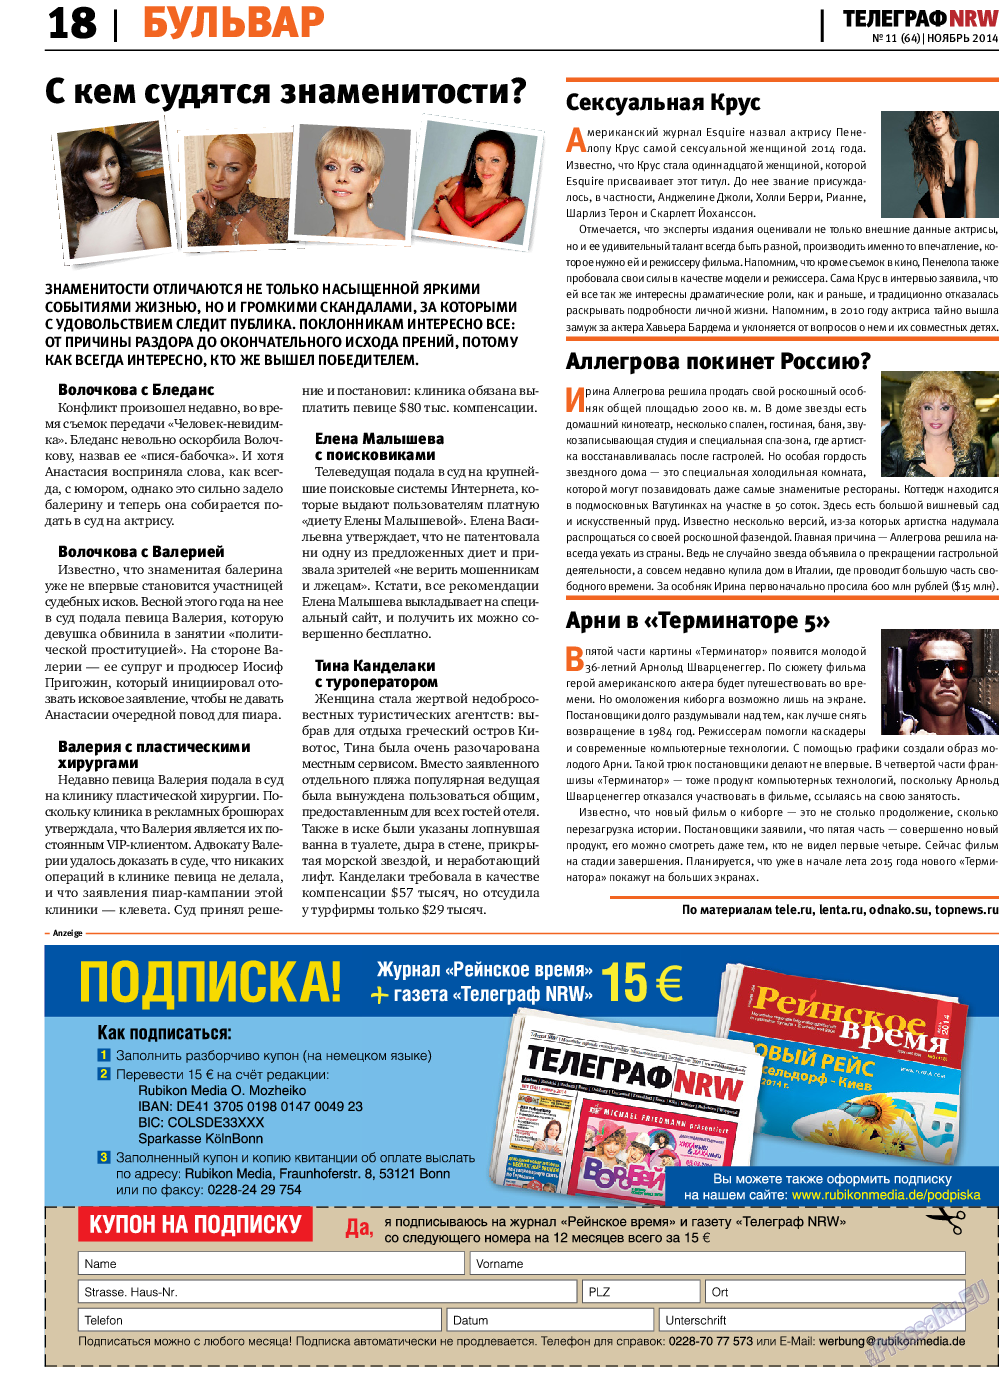 Телеграф NRW (газета). 2014 год, номер 11, стр. 18